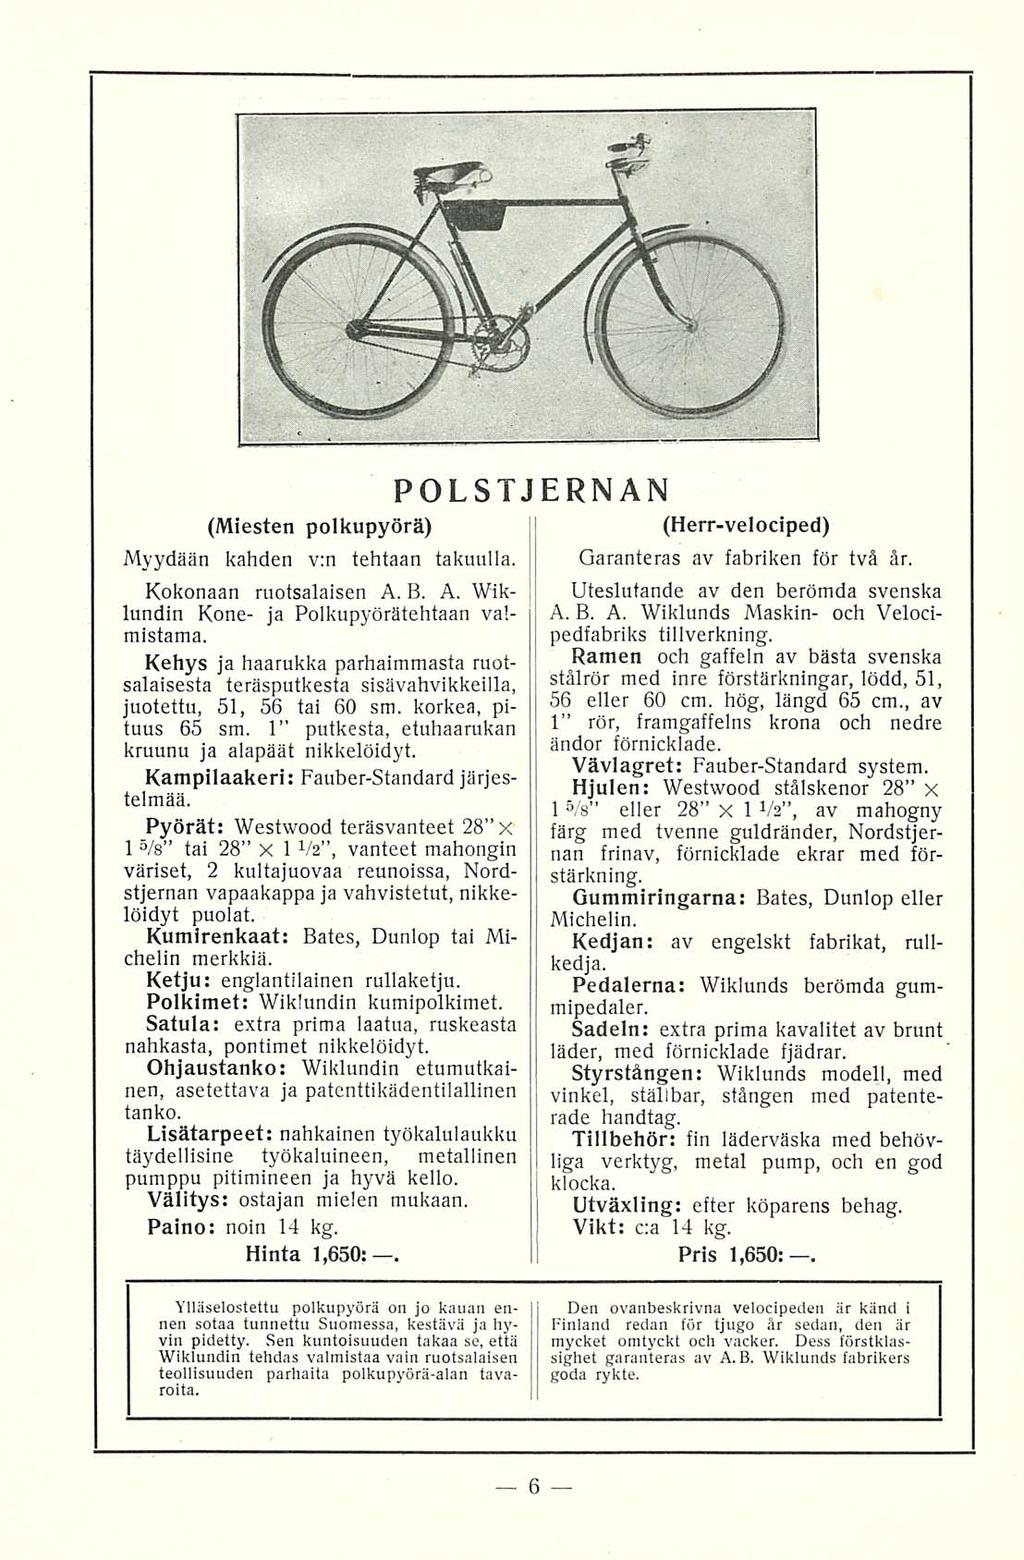 POLSTJERNAN (Miesten polkupyörä) Myydään kahden v:n tehtaan takuulla. Kokonaan ruotsalaisen A. B. A. Wiklundin Kone- ja Polkupyörätehtaan valmistama.